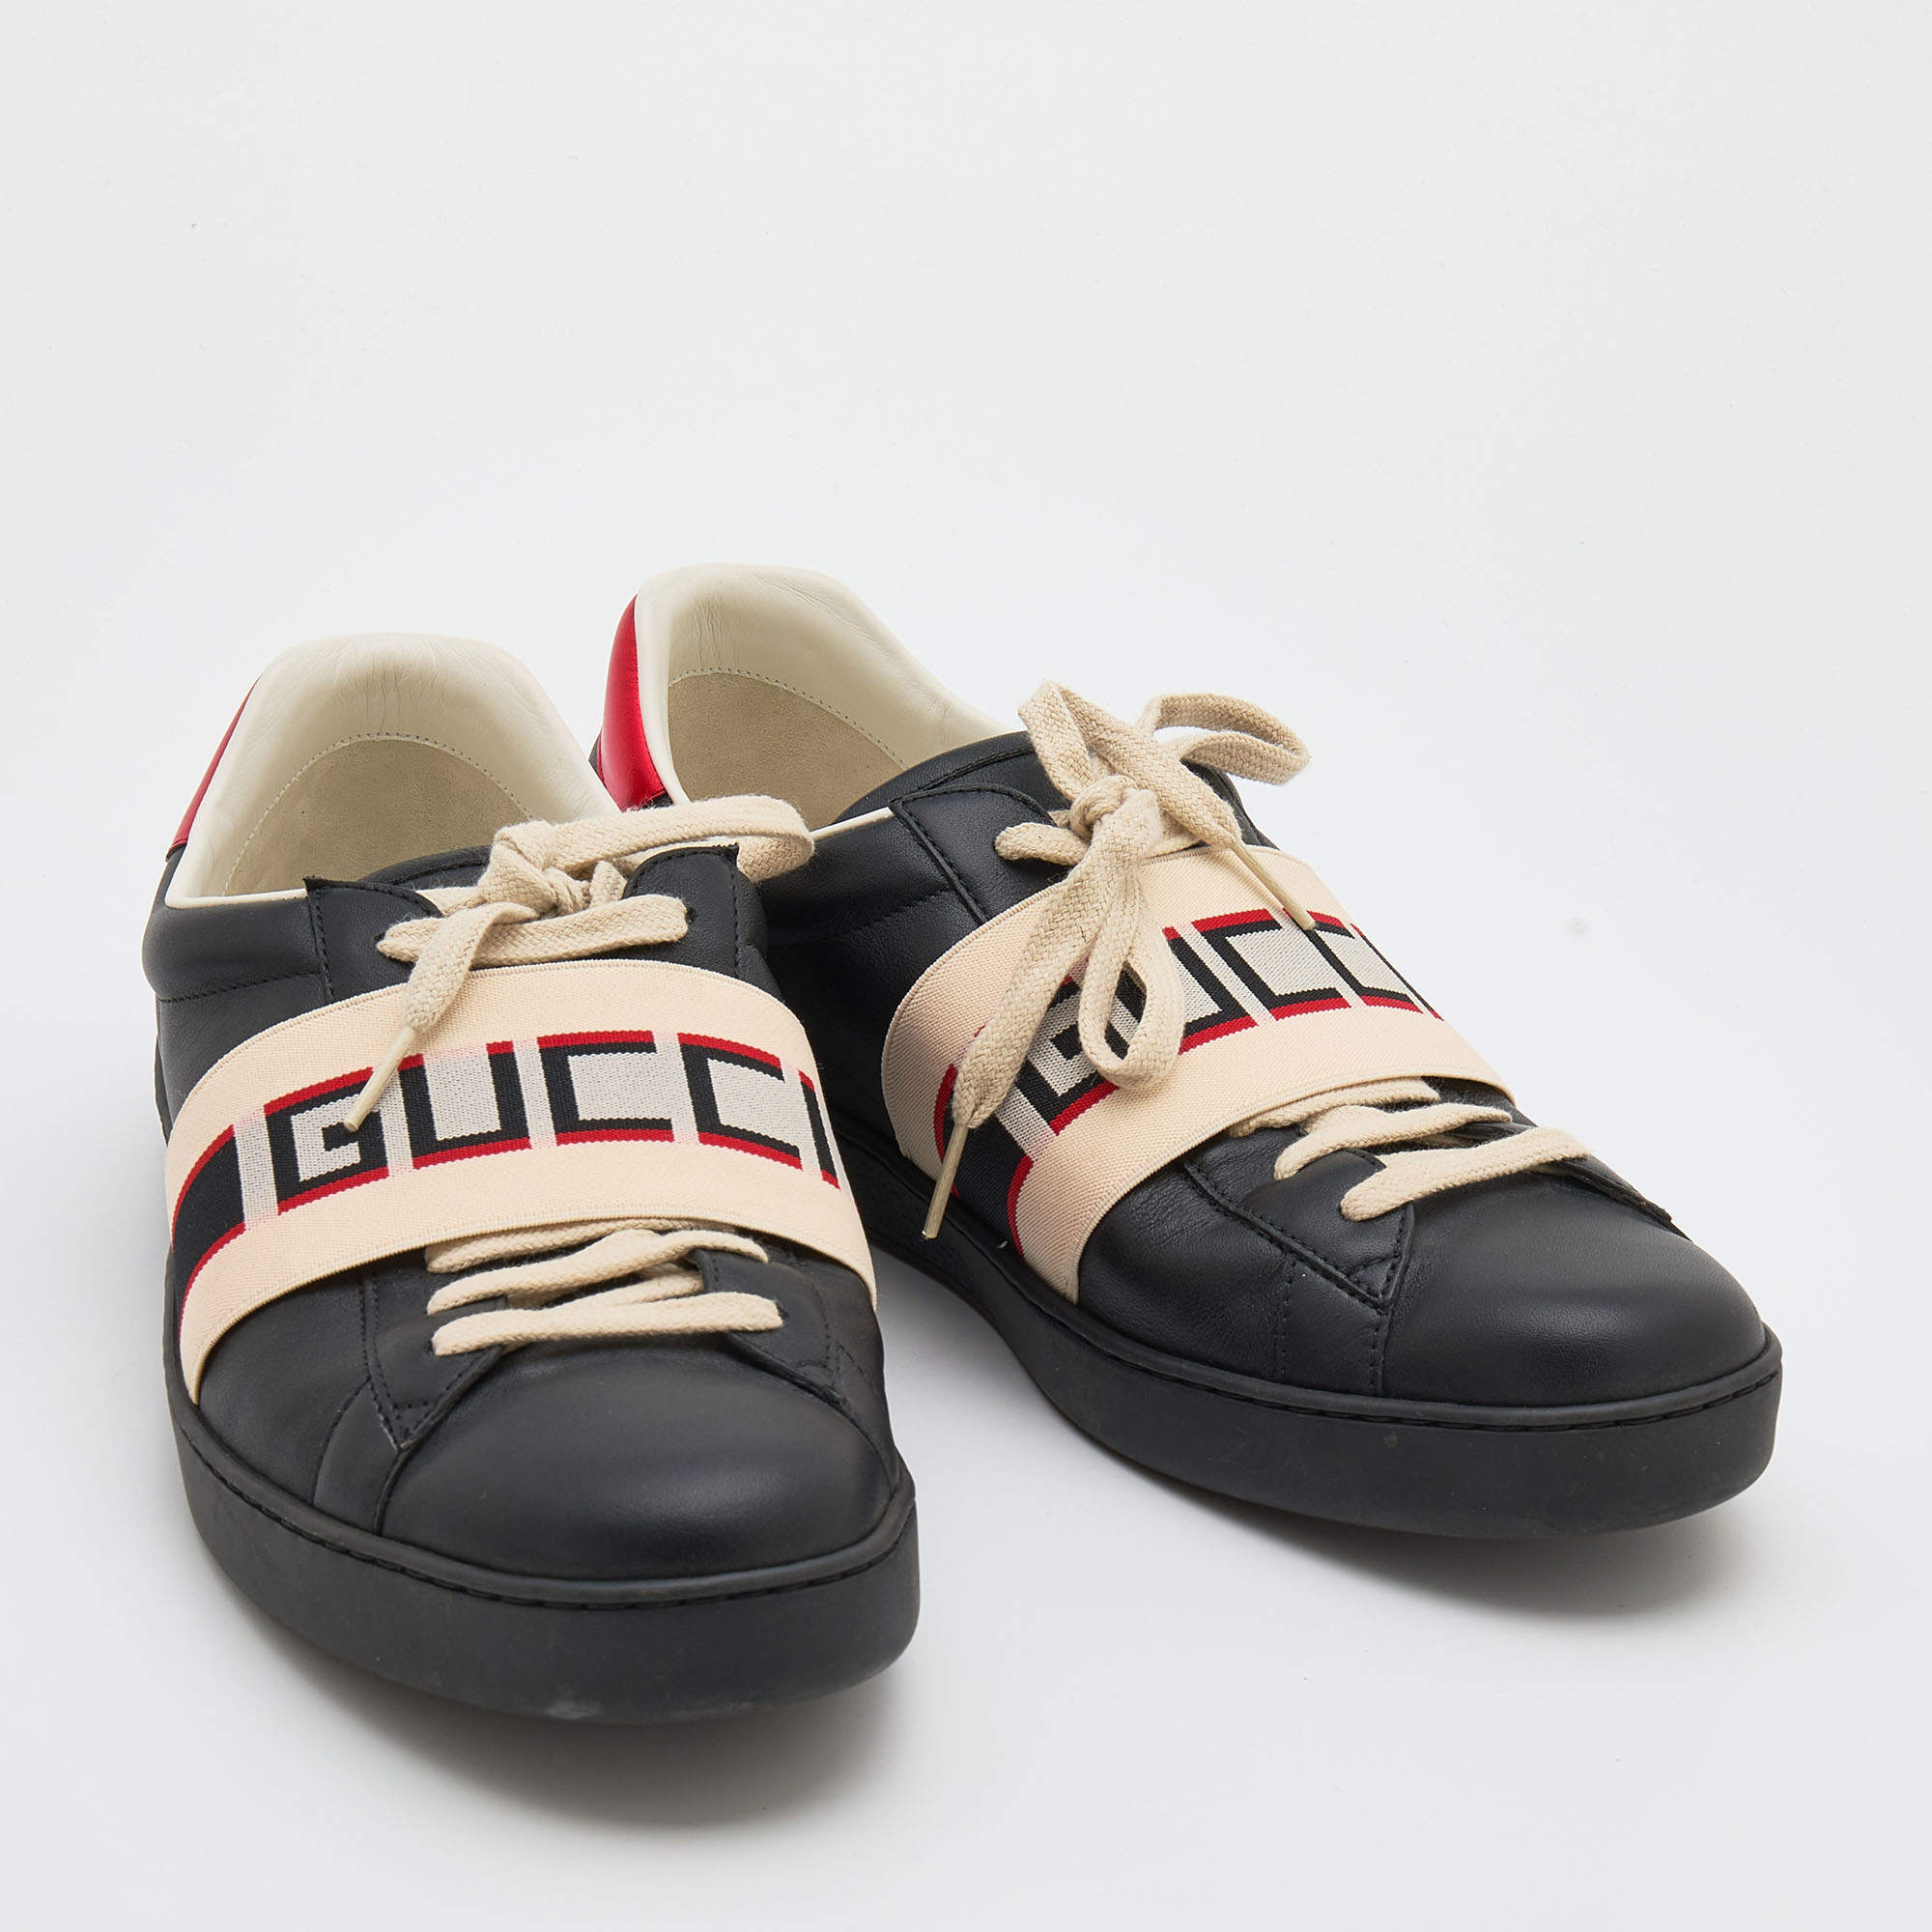 Authentic Designer bracelets Gucci - Escros Sneaker Shop